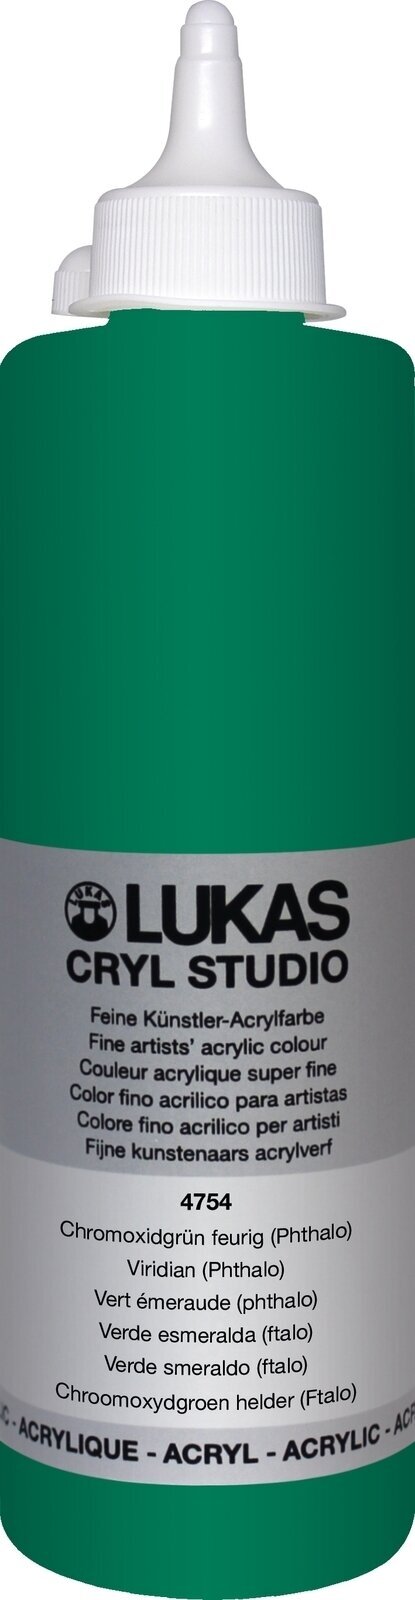 Acrylverf Lukas Cryl Studio Acrylverf 500 ml Viridian (Phthalo)